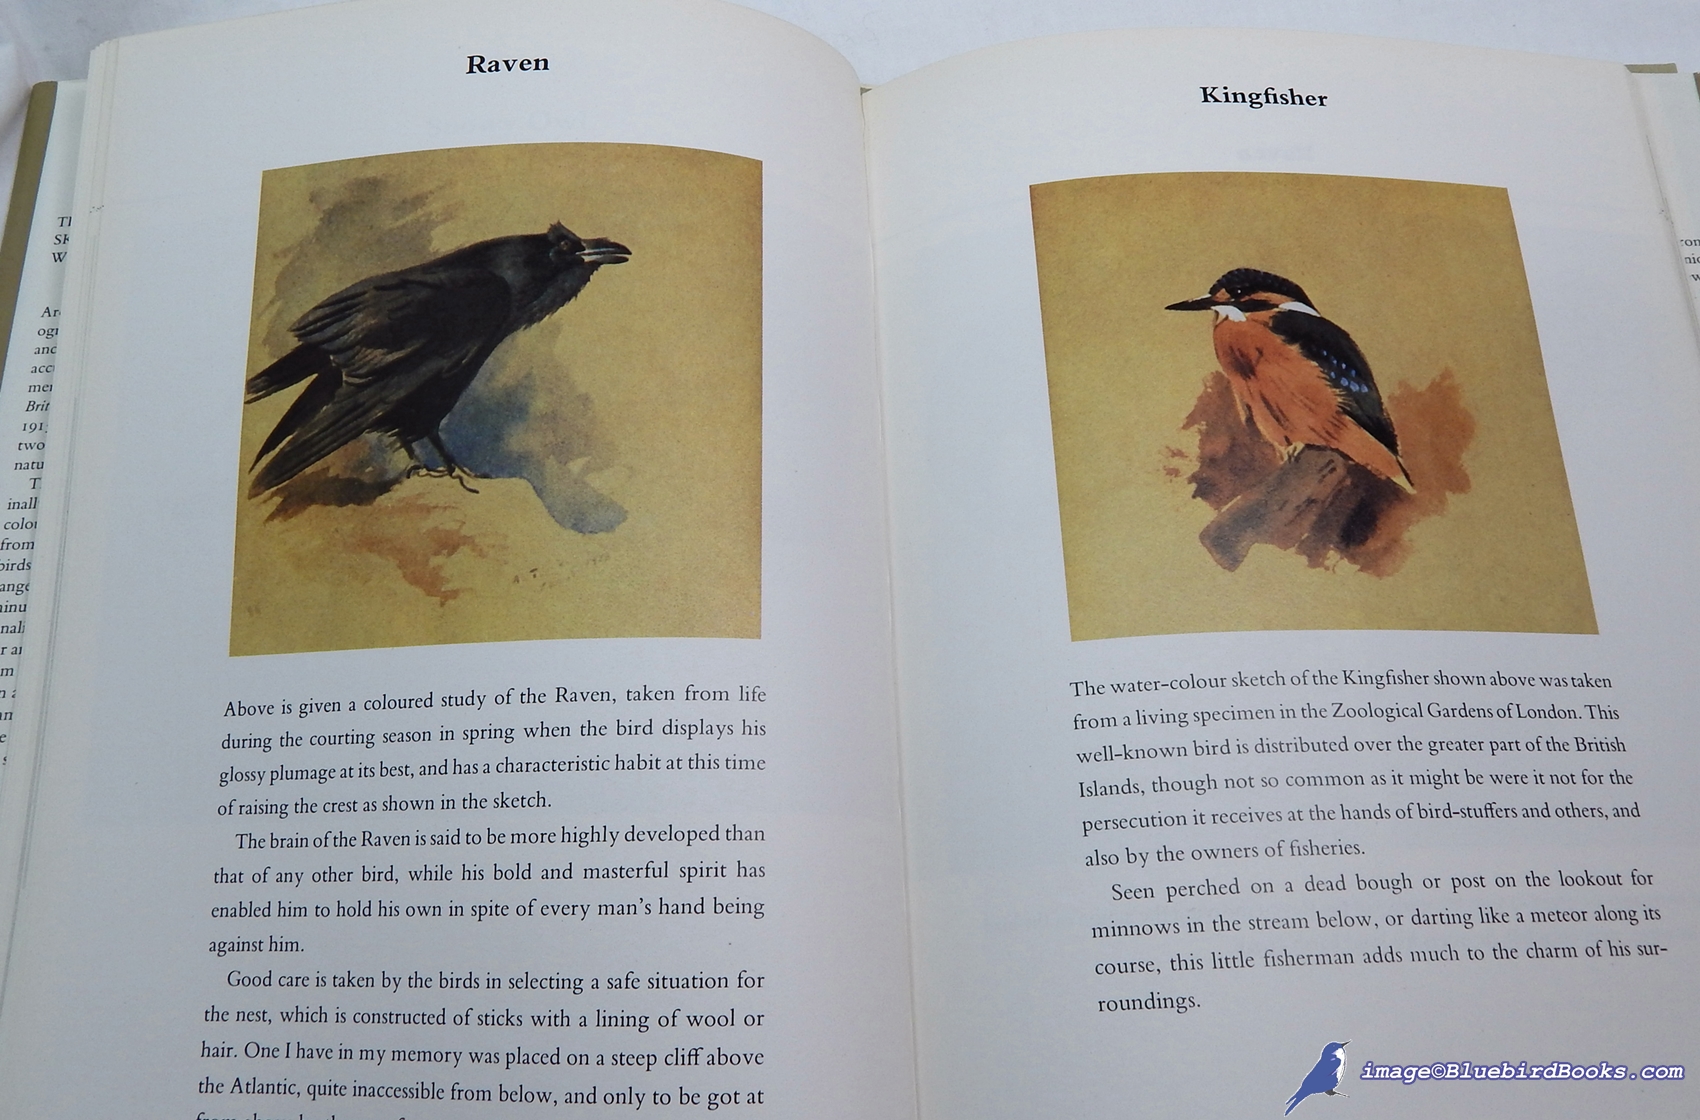 THORBURN, ARCHIBALD - Thorburn's Naturalist's Sketchbook